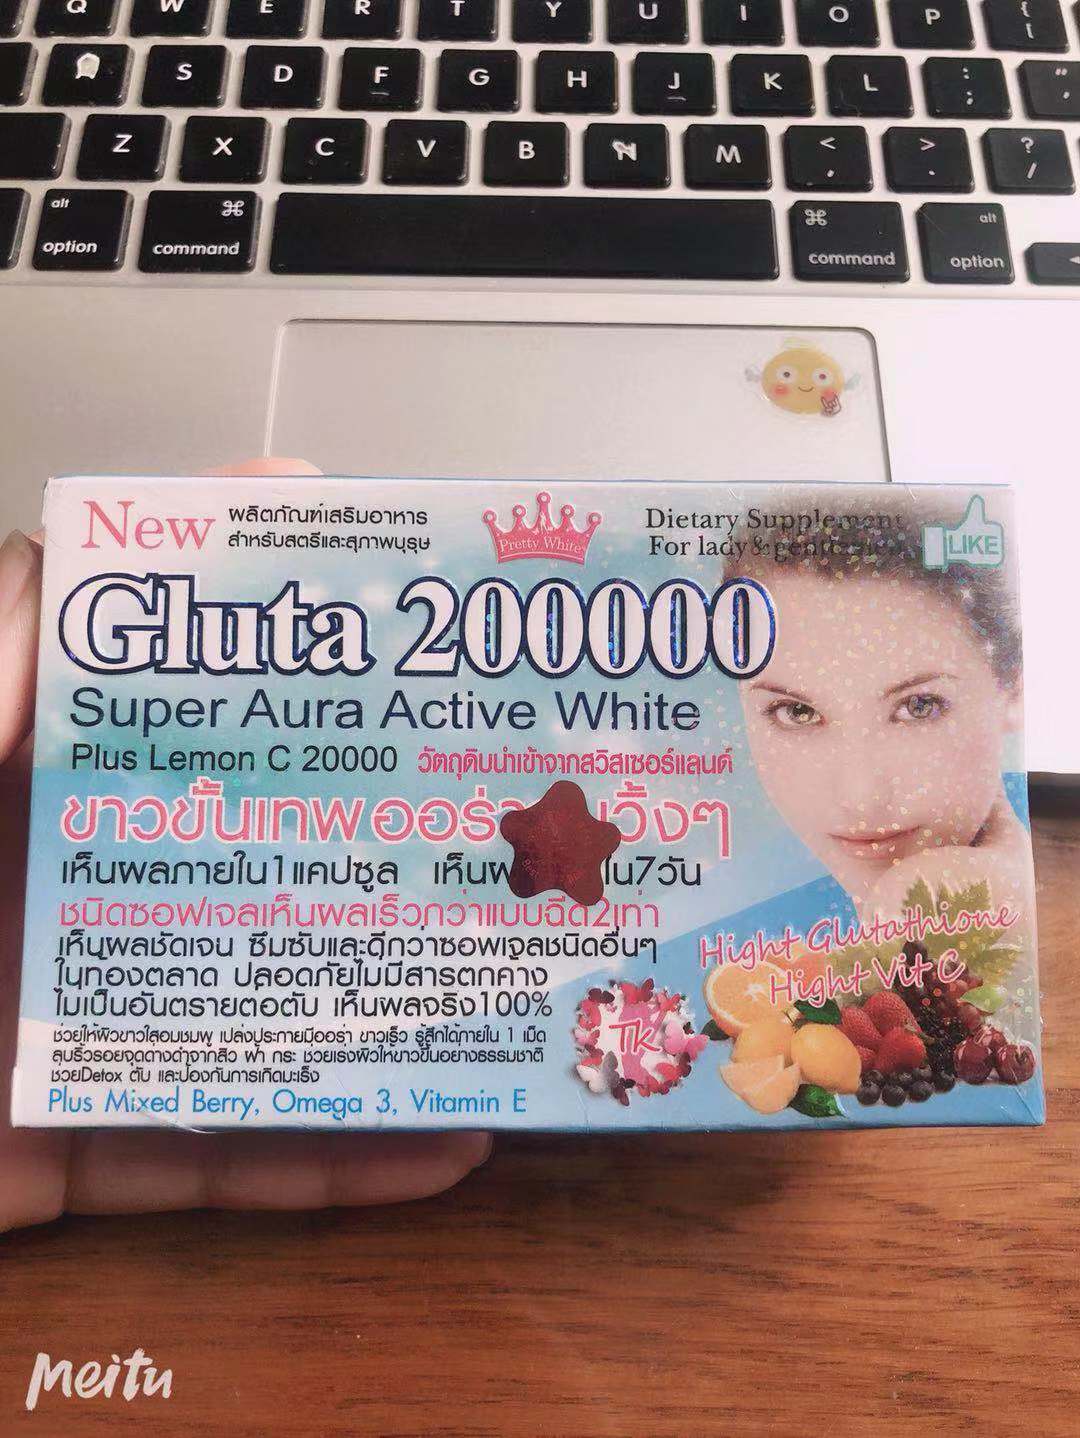 现货Gluta 200000 Super Aura Active White +Lemon C 20000 12颗